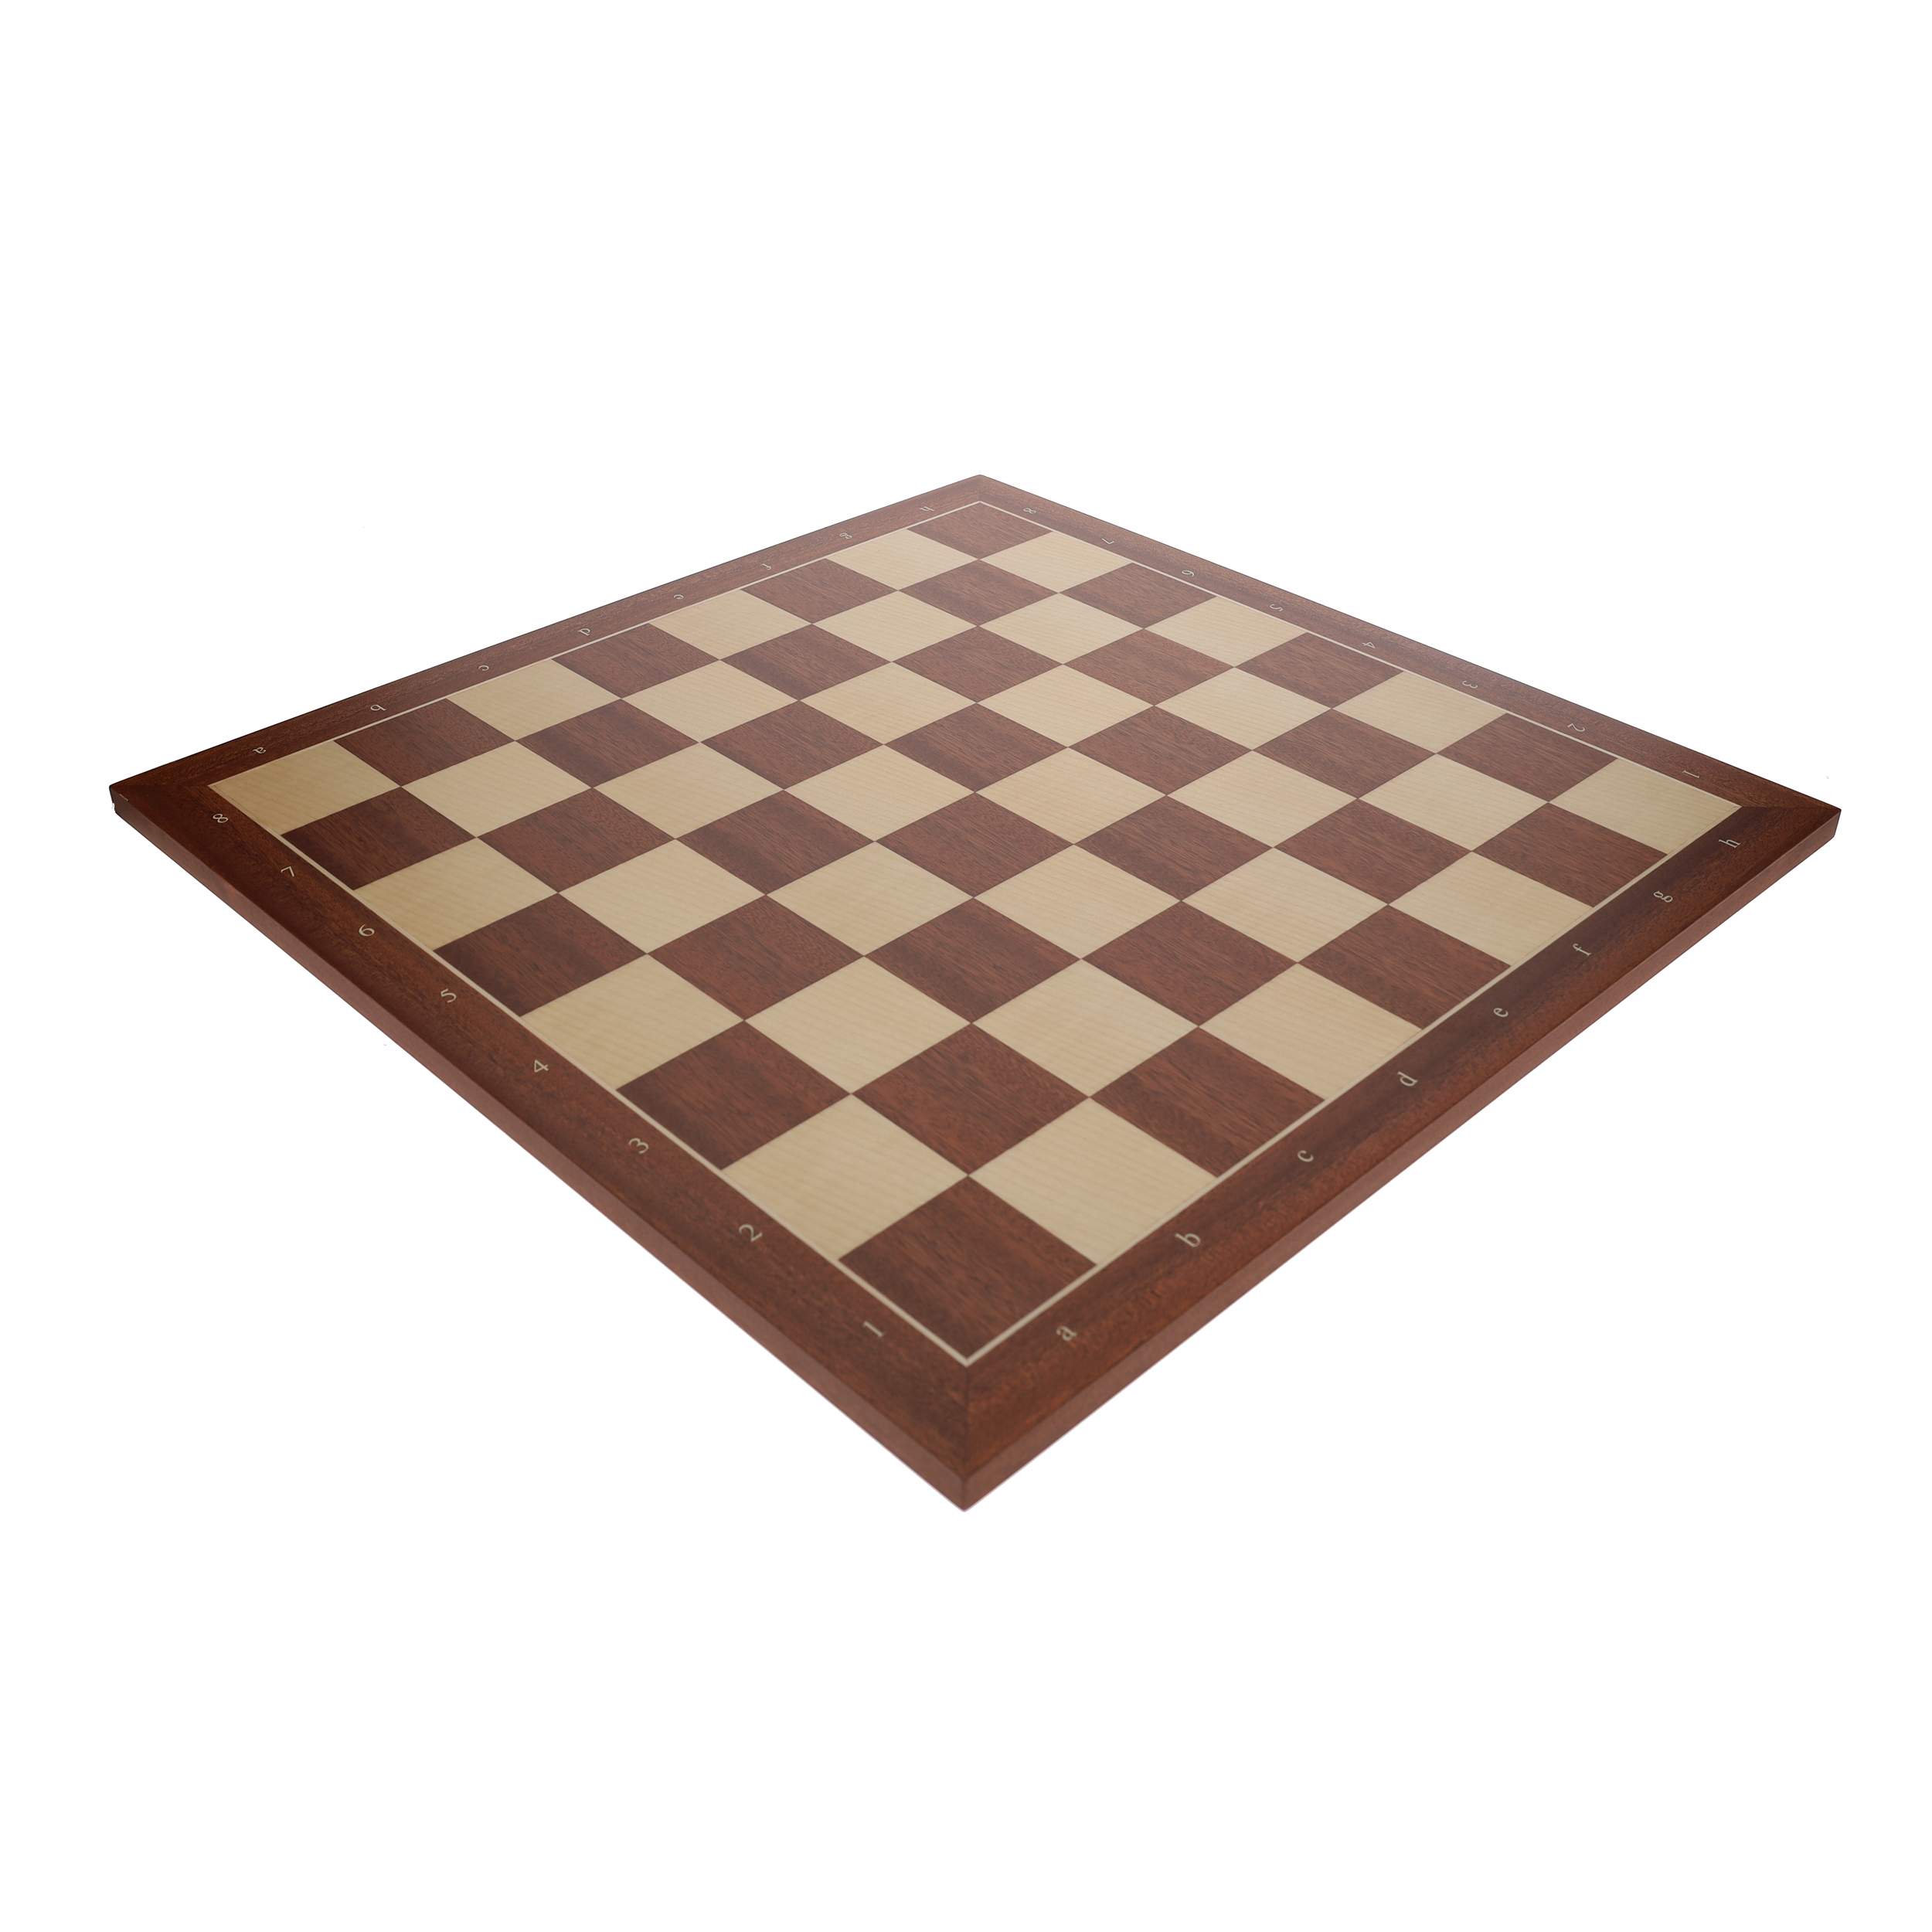 Wooden Mahogany chess board (coordinates)